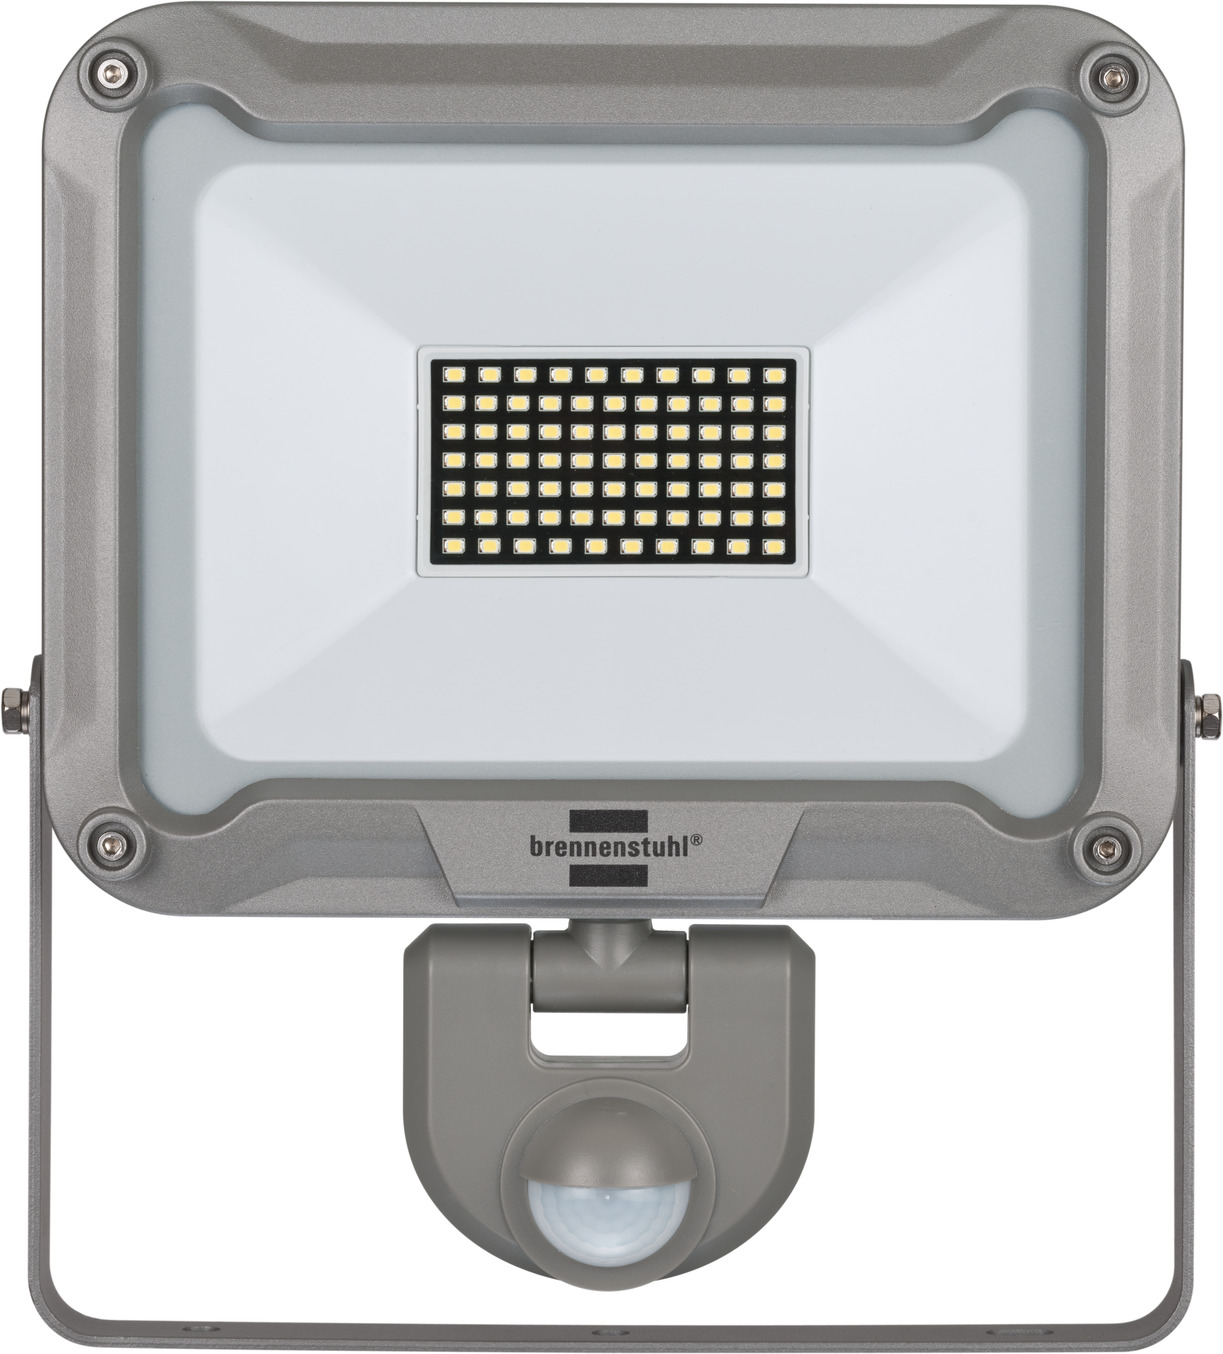 LED brennenstuhl® 4400lm, | IP54 Infrarot-Bewegungsmelder mit P 5050 50W, JARO Strahler